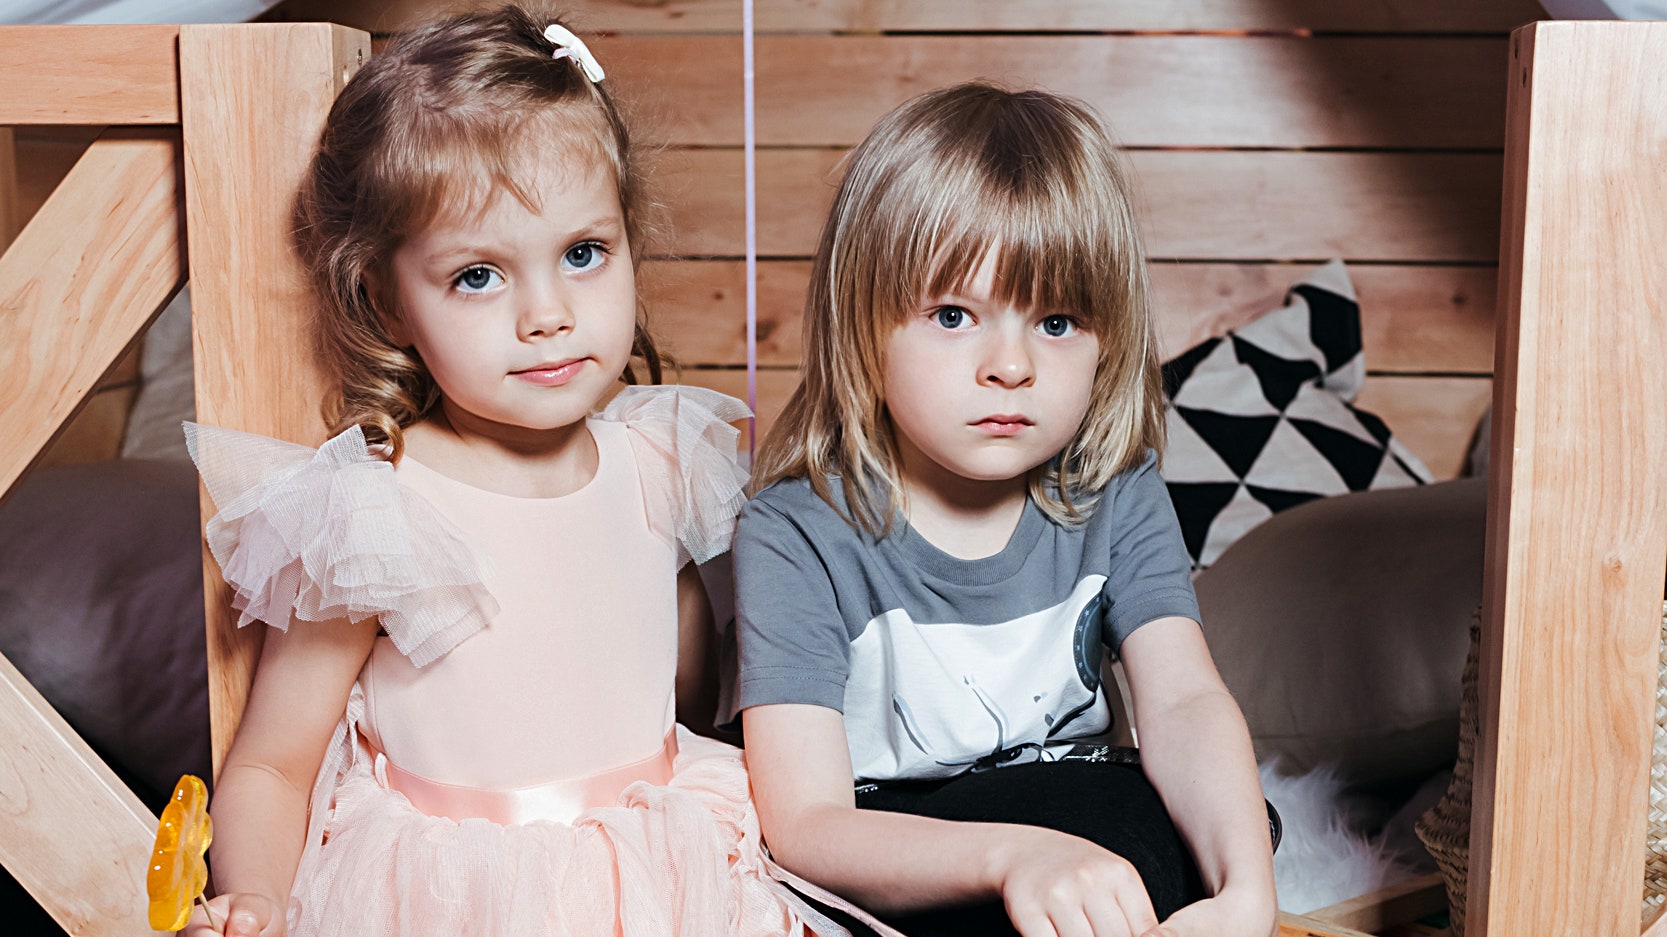 Запуск коллекции детской мебели Moonsters  Lena Perminova Елена Перминова Яна Рудковская с детьми